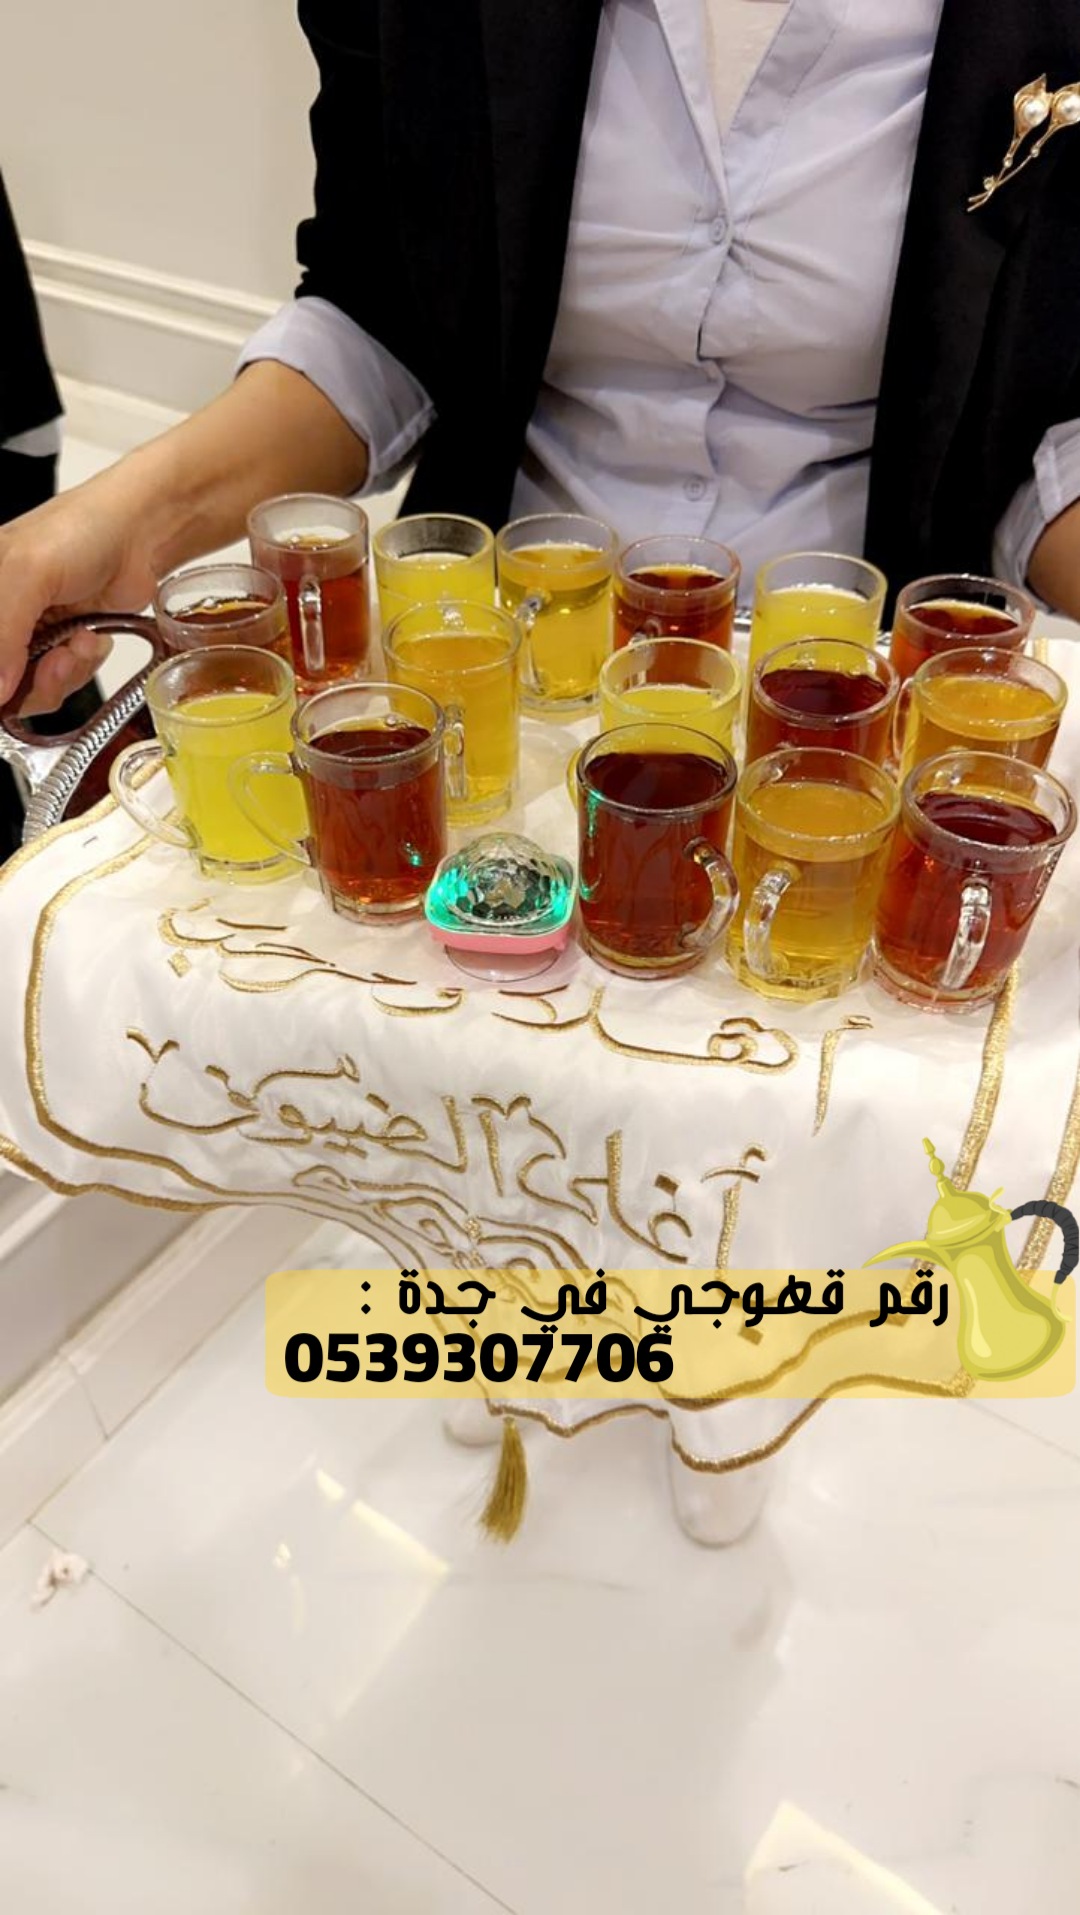 رقم قهوجيين مباشرين قهوة في جدة,0539307706